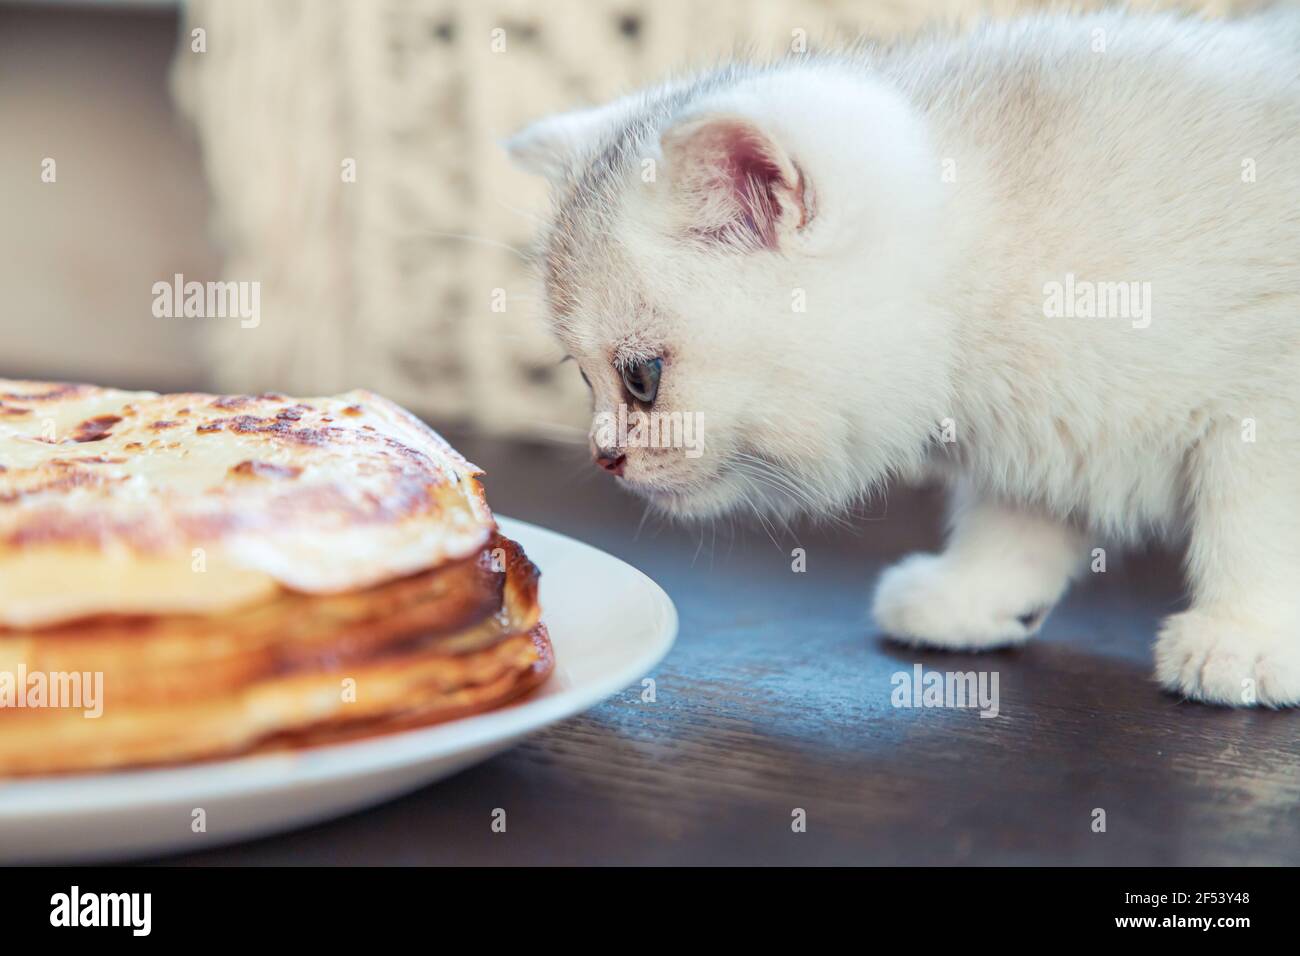 Das weiße britische Kätzchen schaut sich die Pfannkuchen an. Traditionelles Gericht für Fasching. Stockfoto